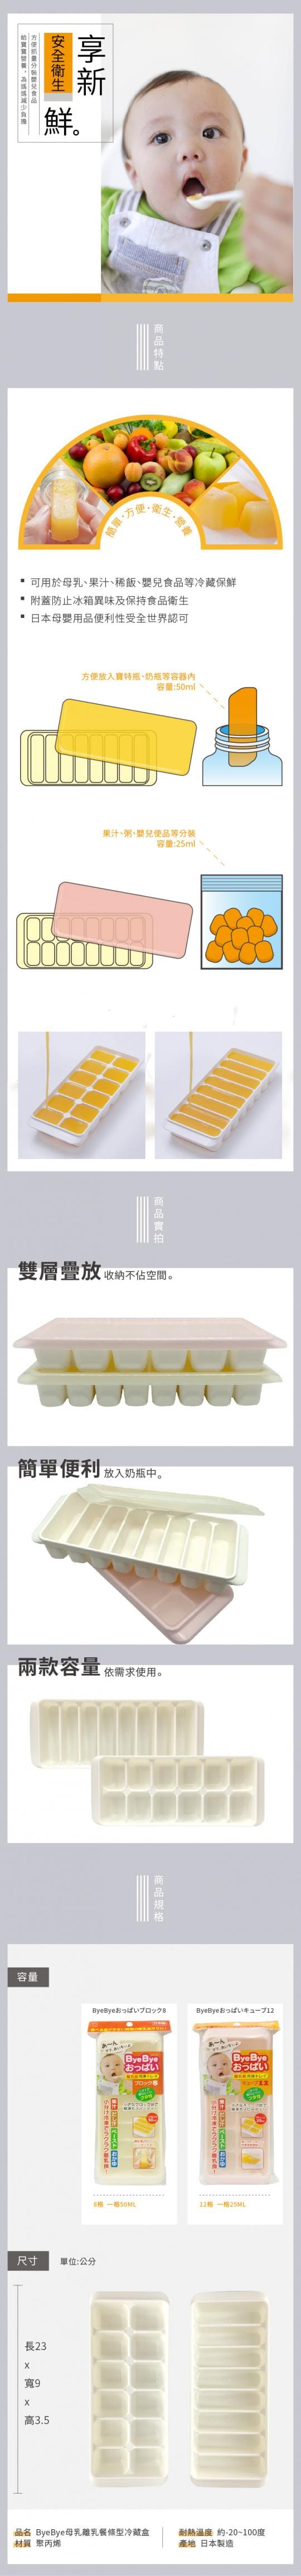 日本小久保kokubo 離乳食品冷凍盒 生活市集